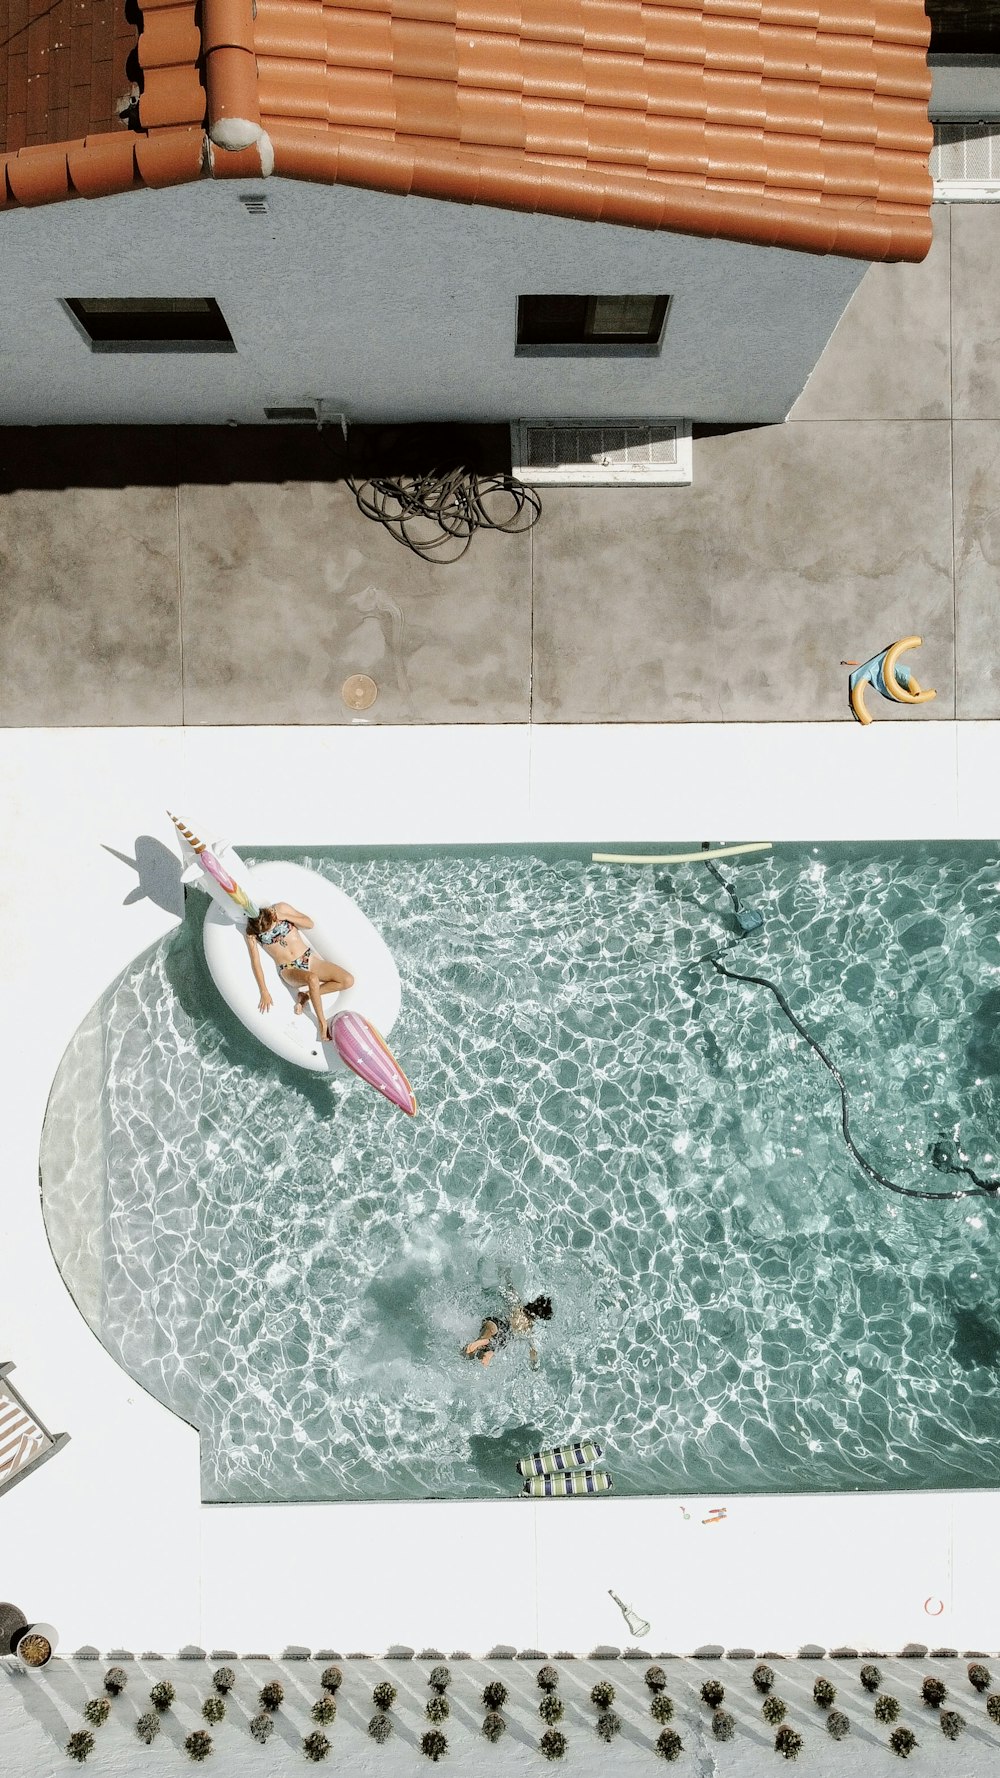 Une femme sur une planche de surf au sommet d’une piscine